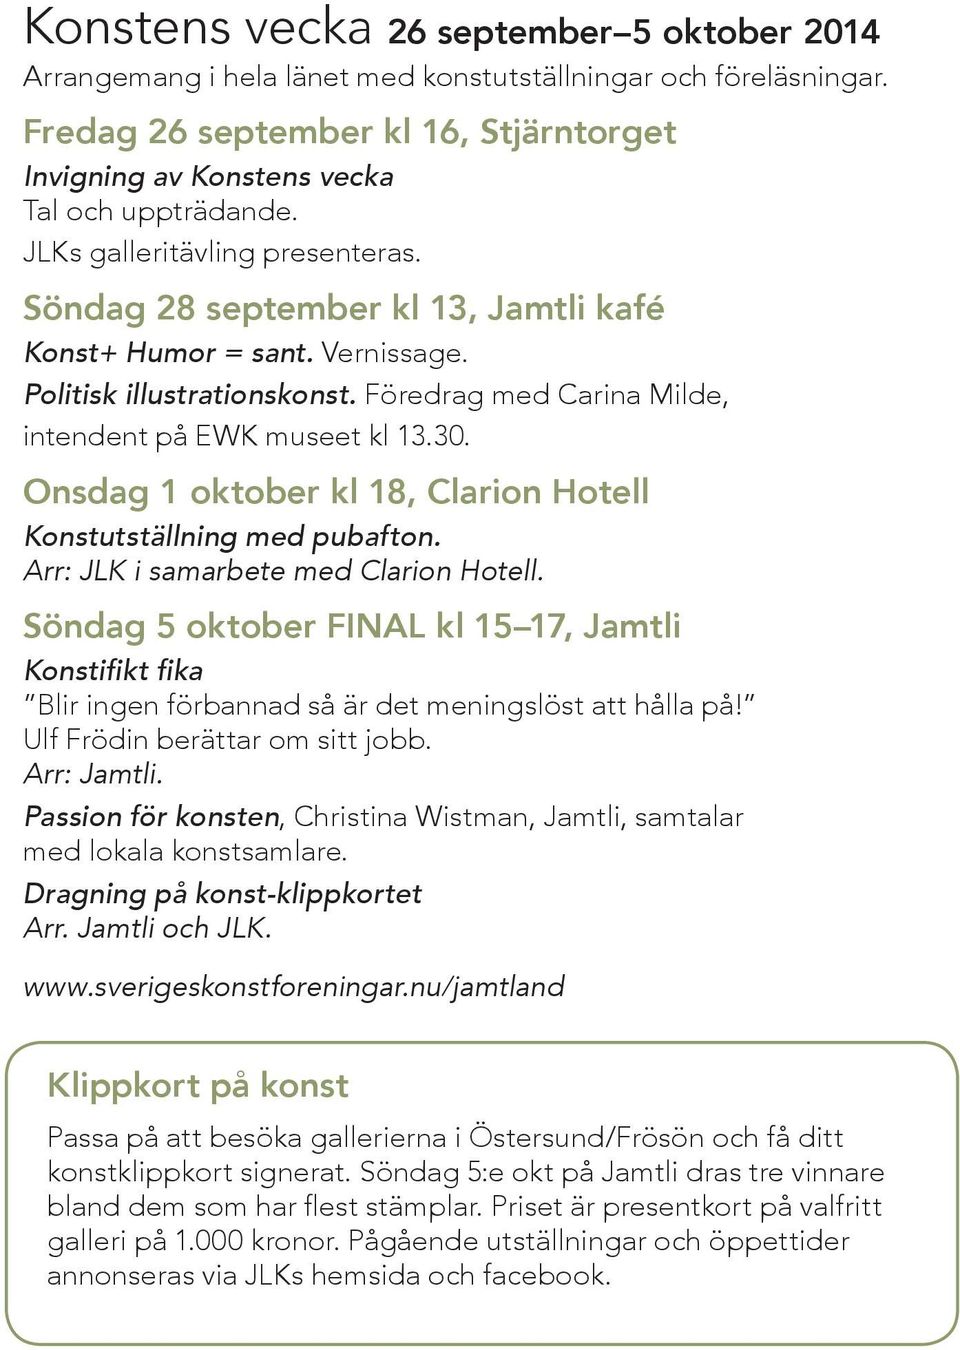 Onsdag 1 oktober kl 18, Clarion Hotell Konstutställning med pubafton. Arr: JLK i samarbete med Clarion Hotell.